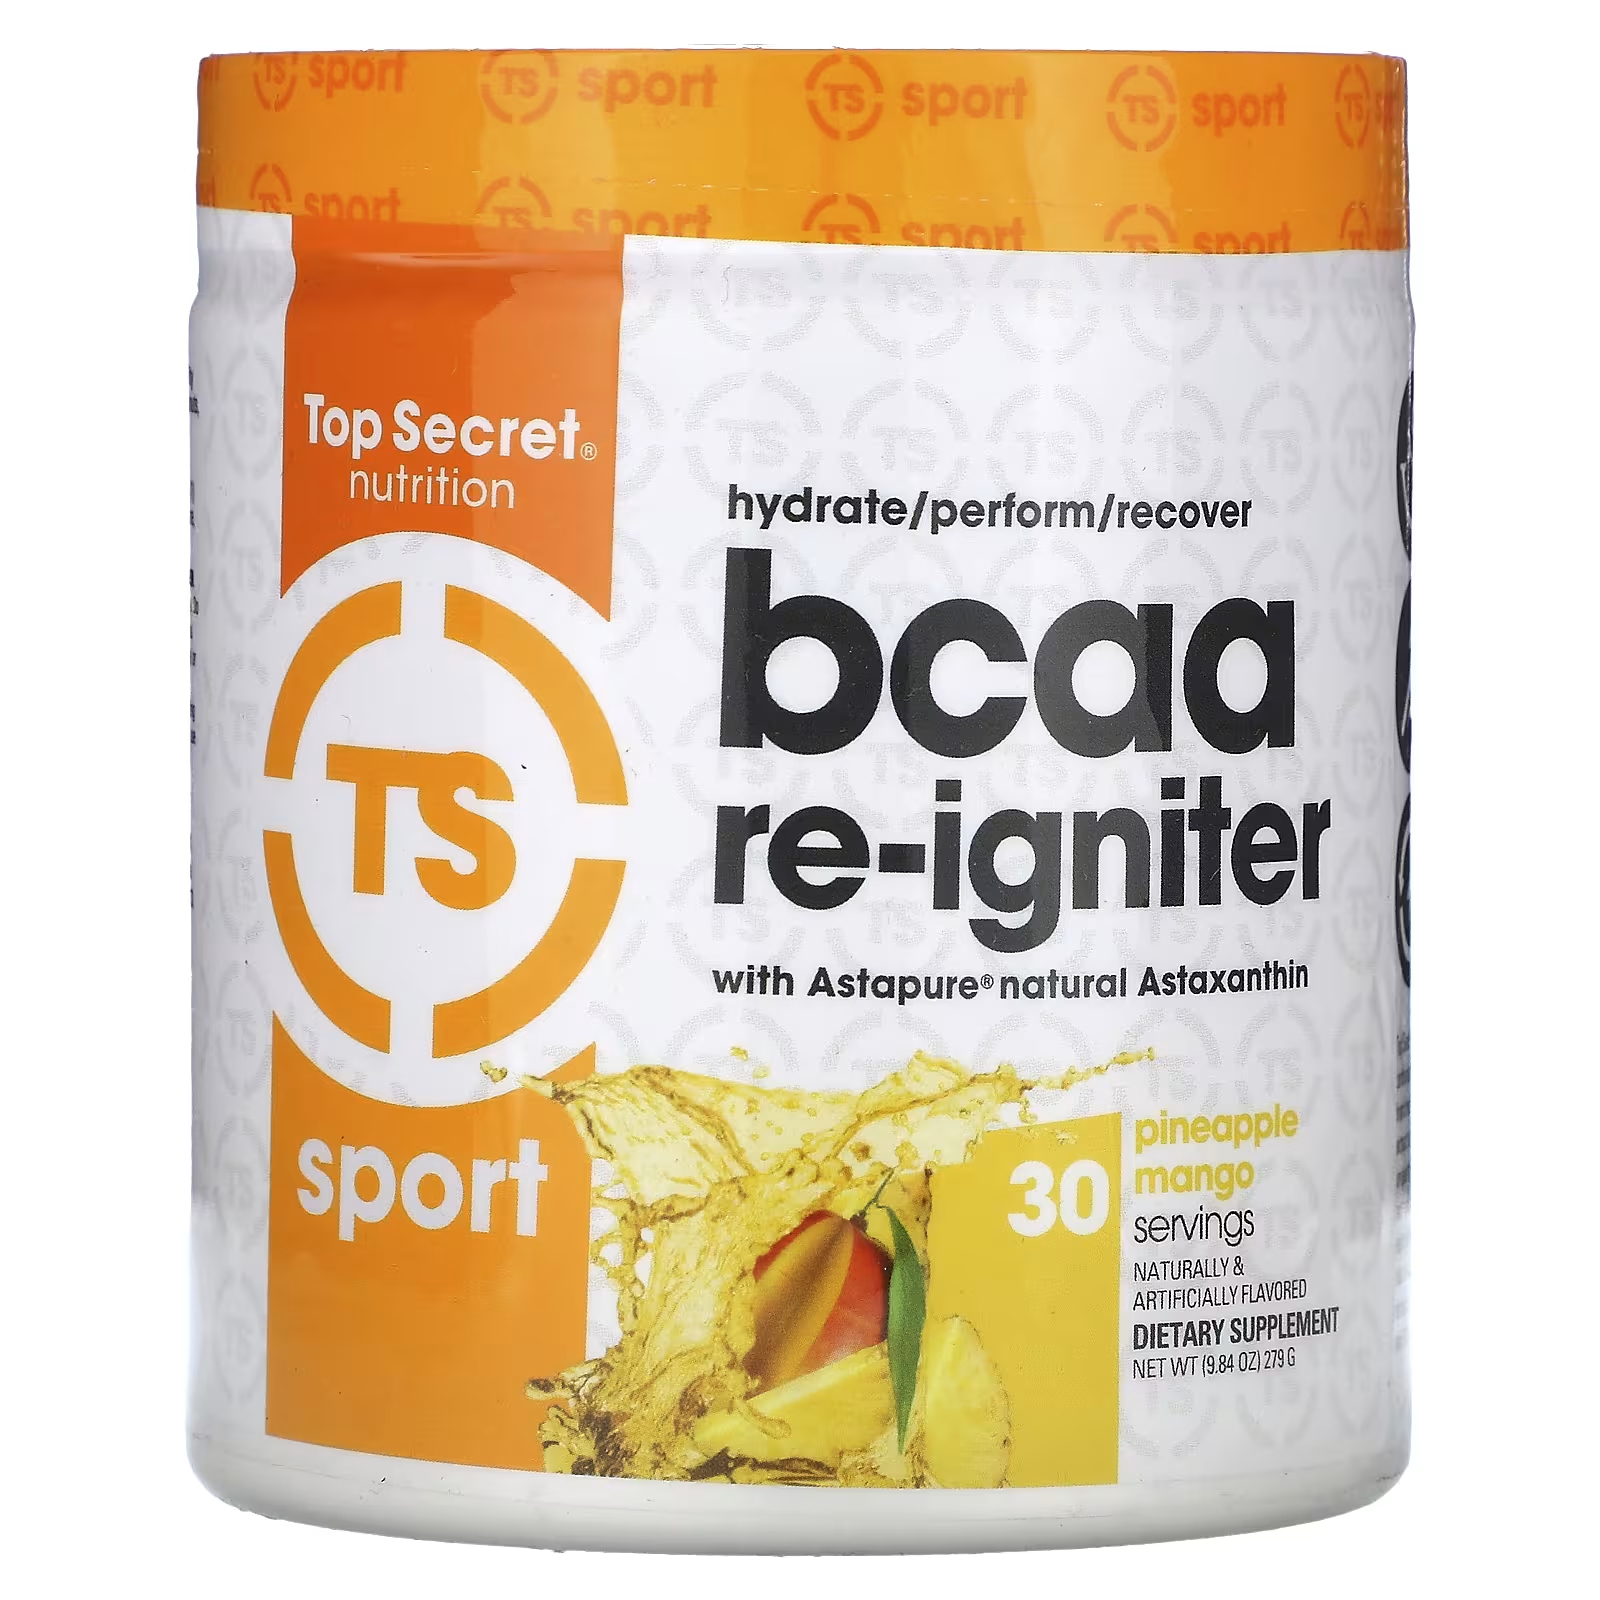 Пищевая добавка Top Secret Nutrition Sport BCAA Re-Igniter ананас и манго, 279 г allmax nutrition impact igniter предтренировочный комплекс ананас и манго 11 6 унц 328 г